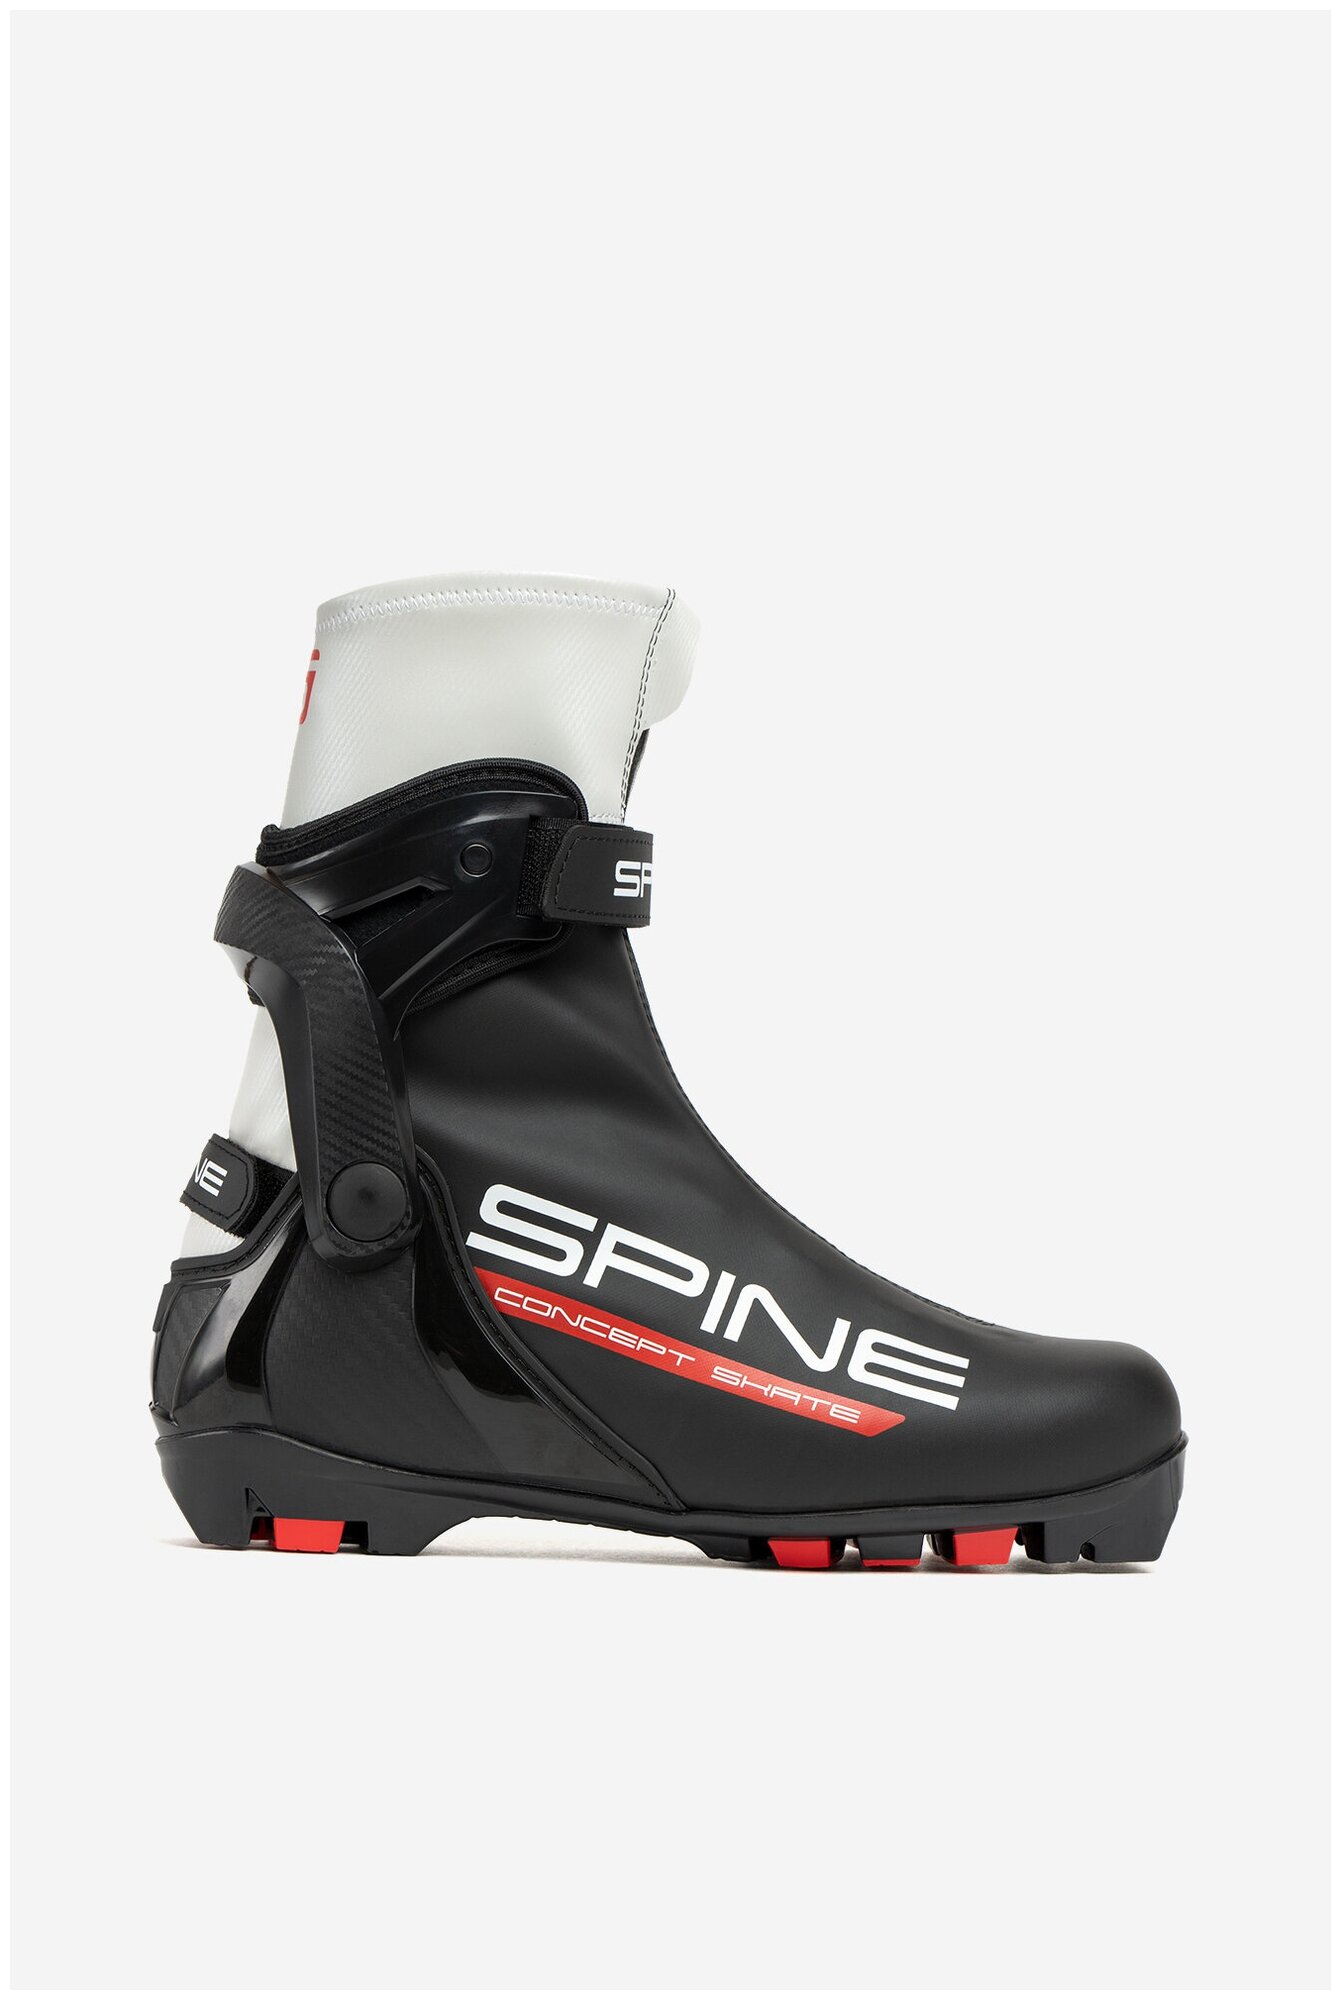 Лыжные ботинки Spine Concept Skate 296-22 NNN (р.46)